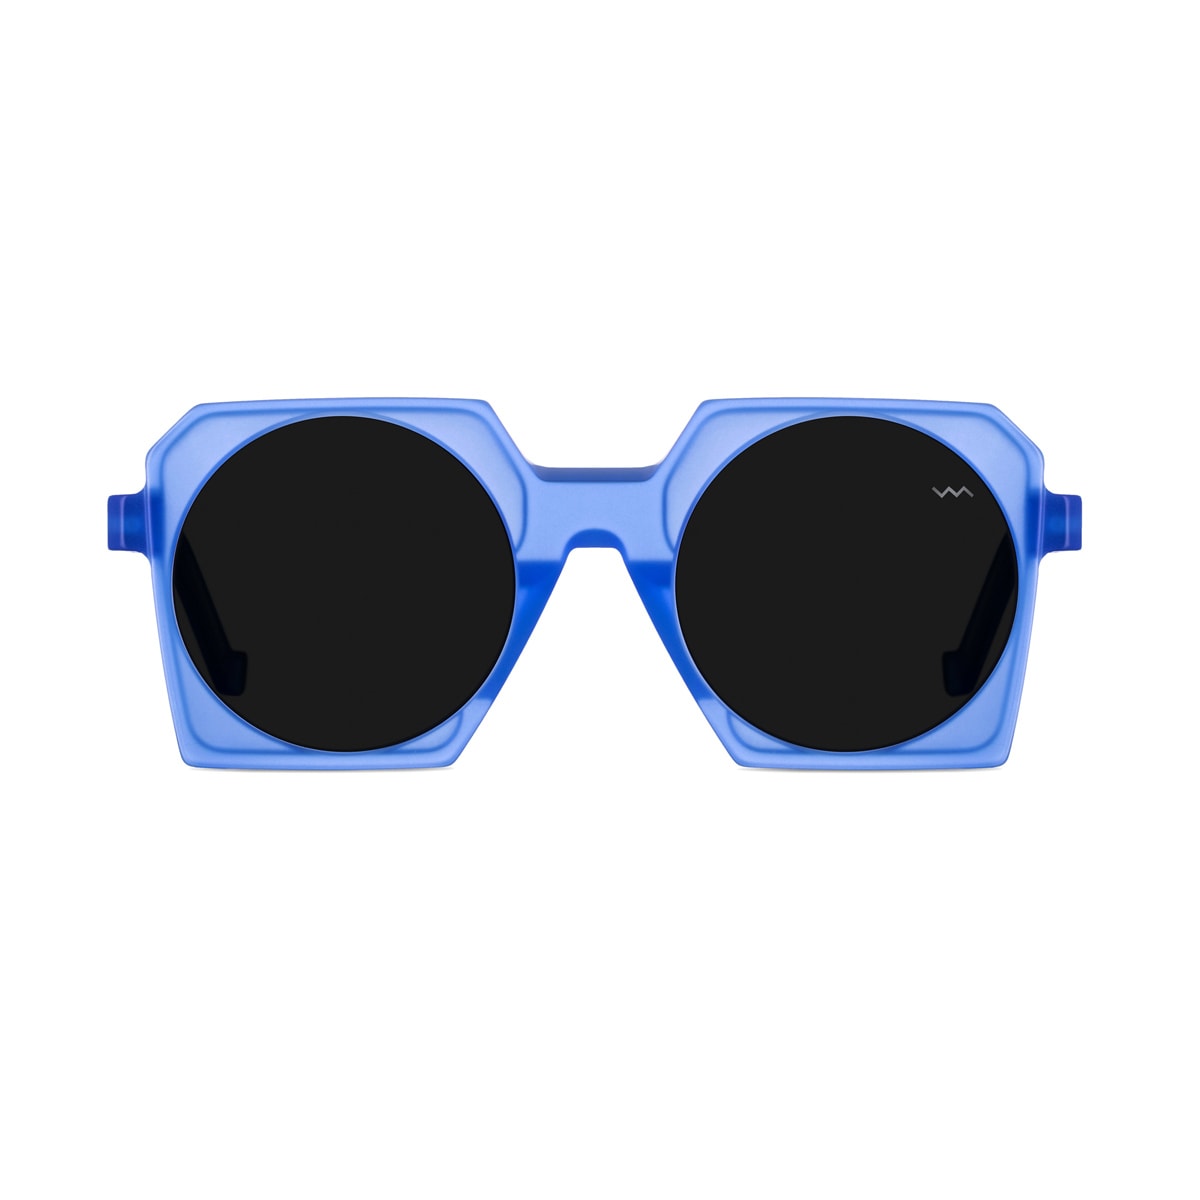 Bl0037 Black Label Cristal Blue Matte Sunglasses